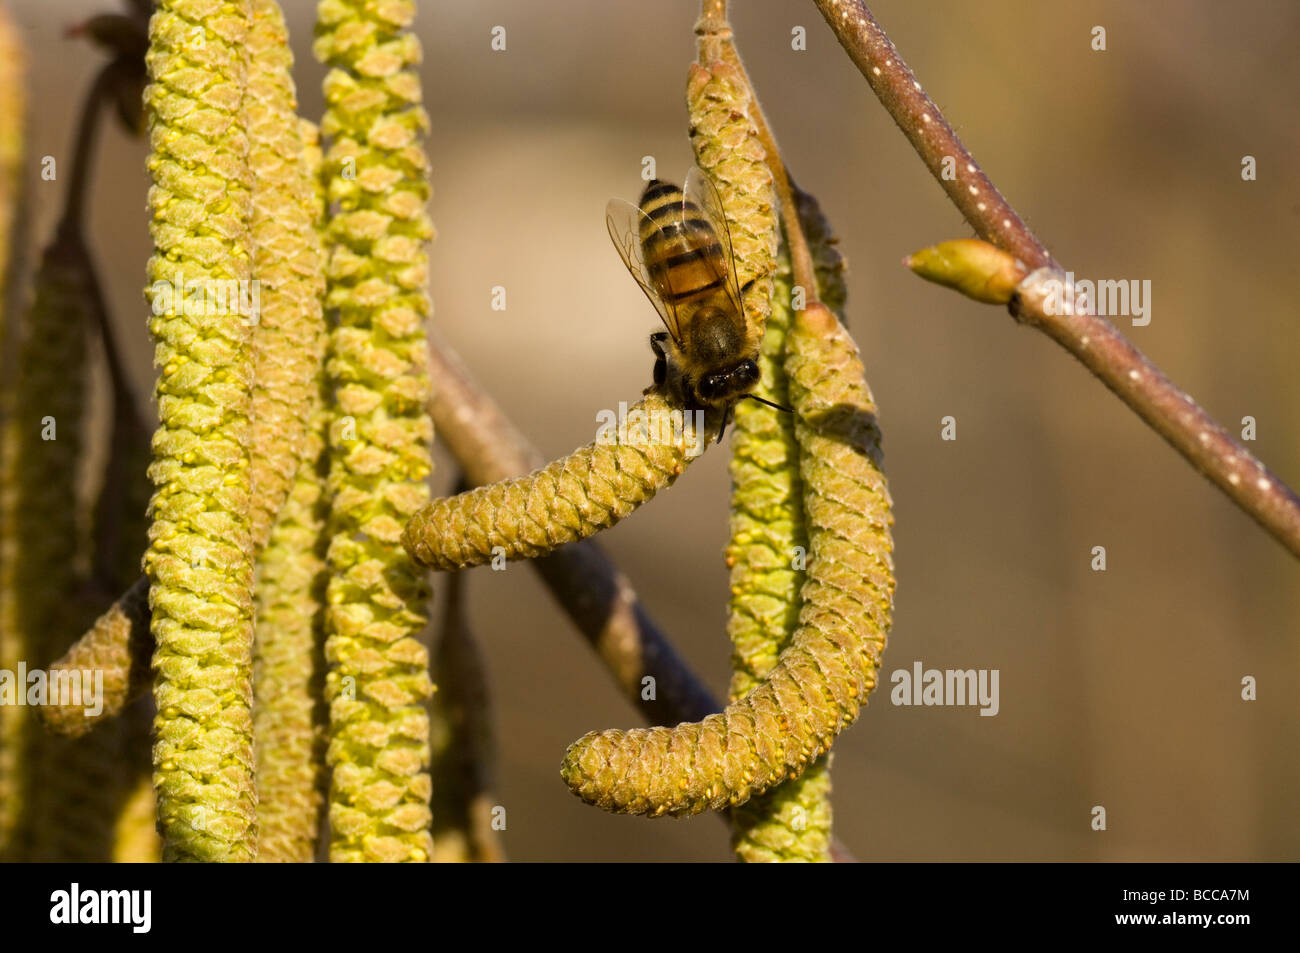 ape bee Apis mellifica nocciolo Coriolus avellana insetti insect impollinazione impollination Stock Photo